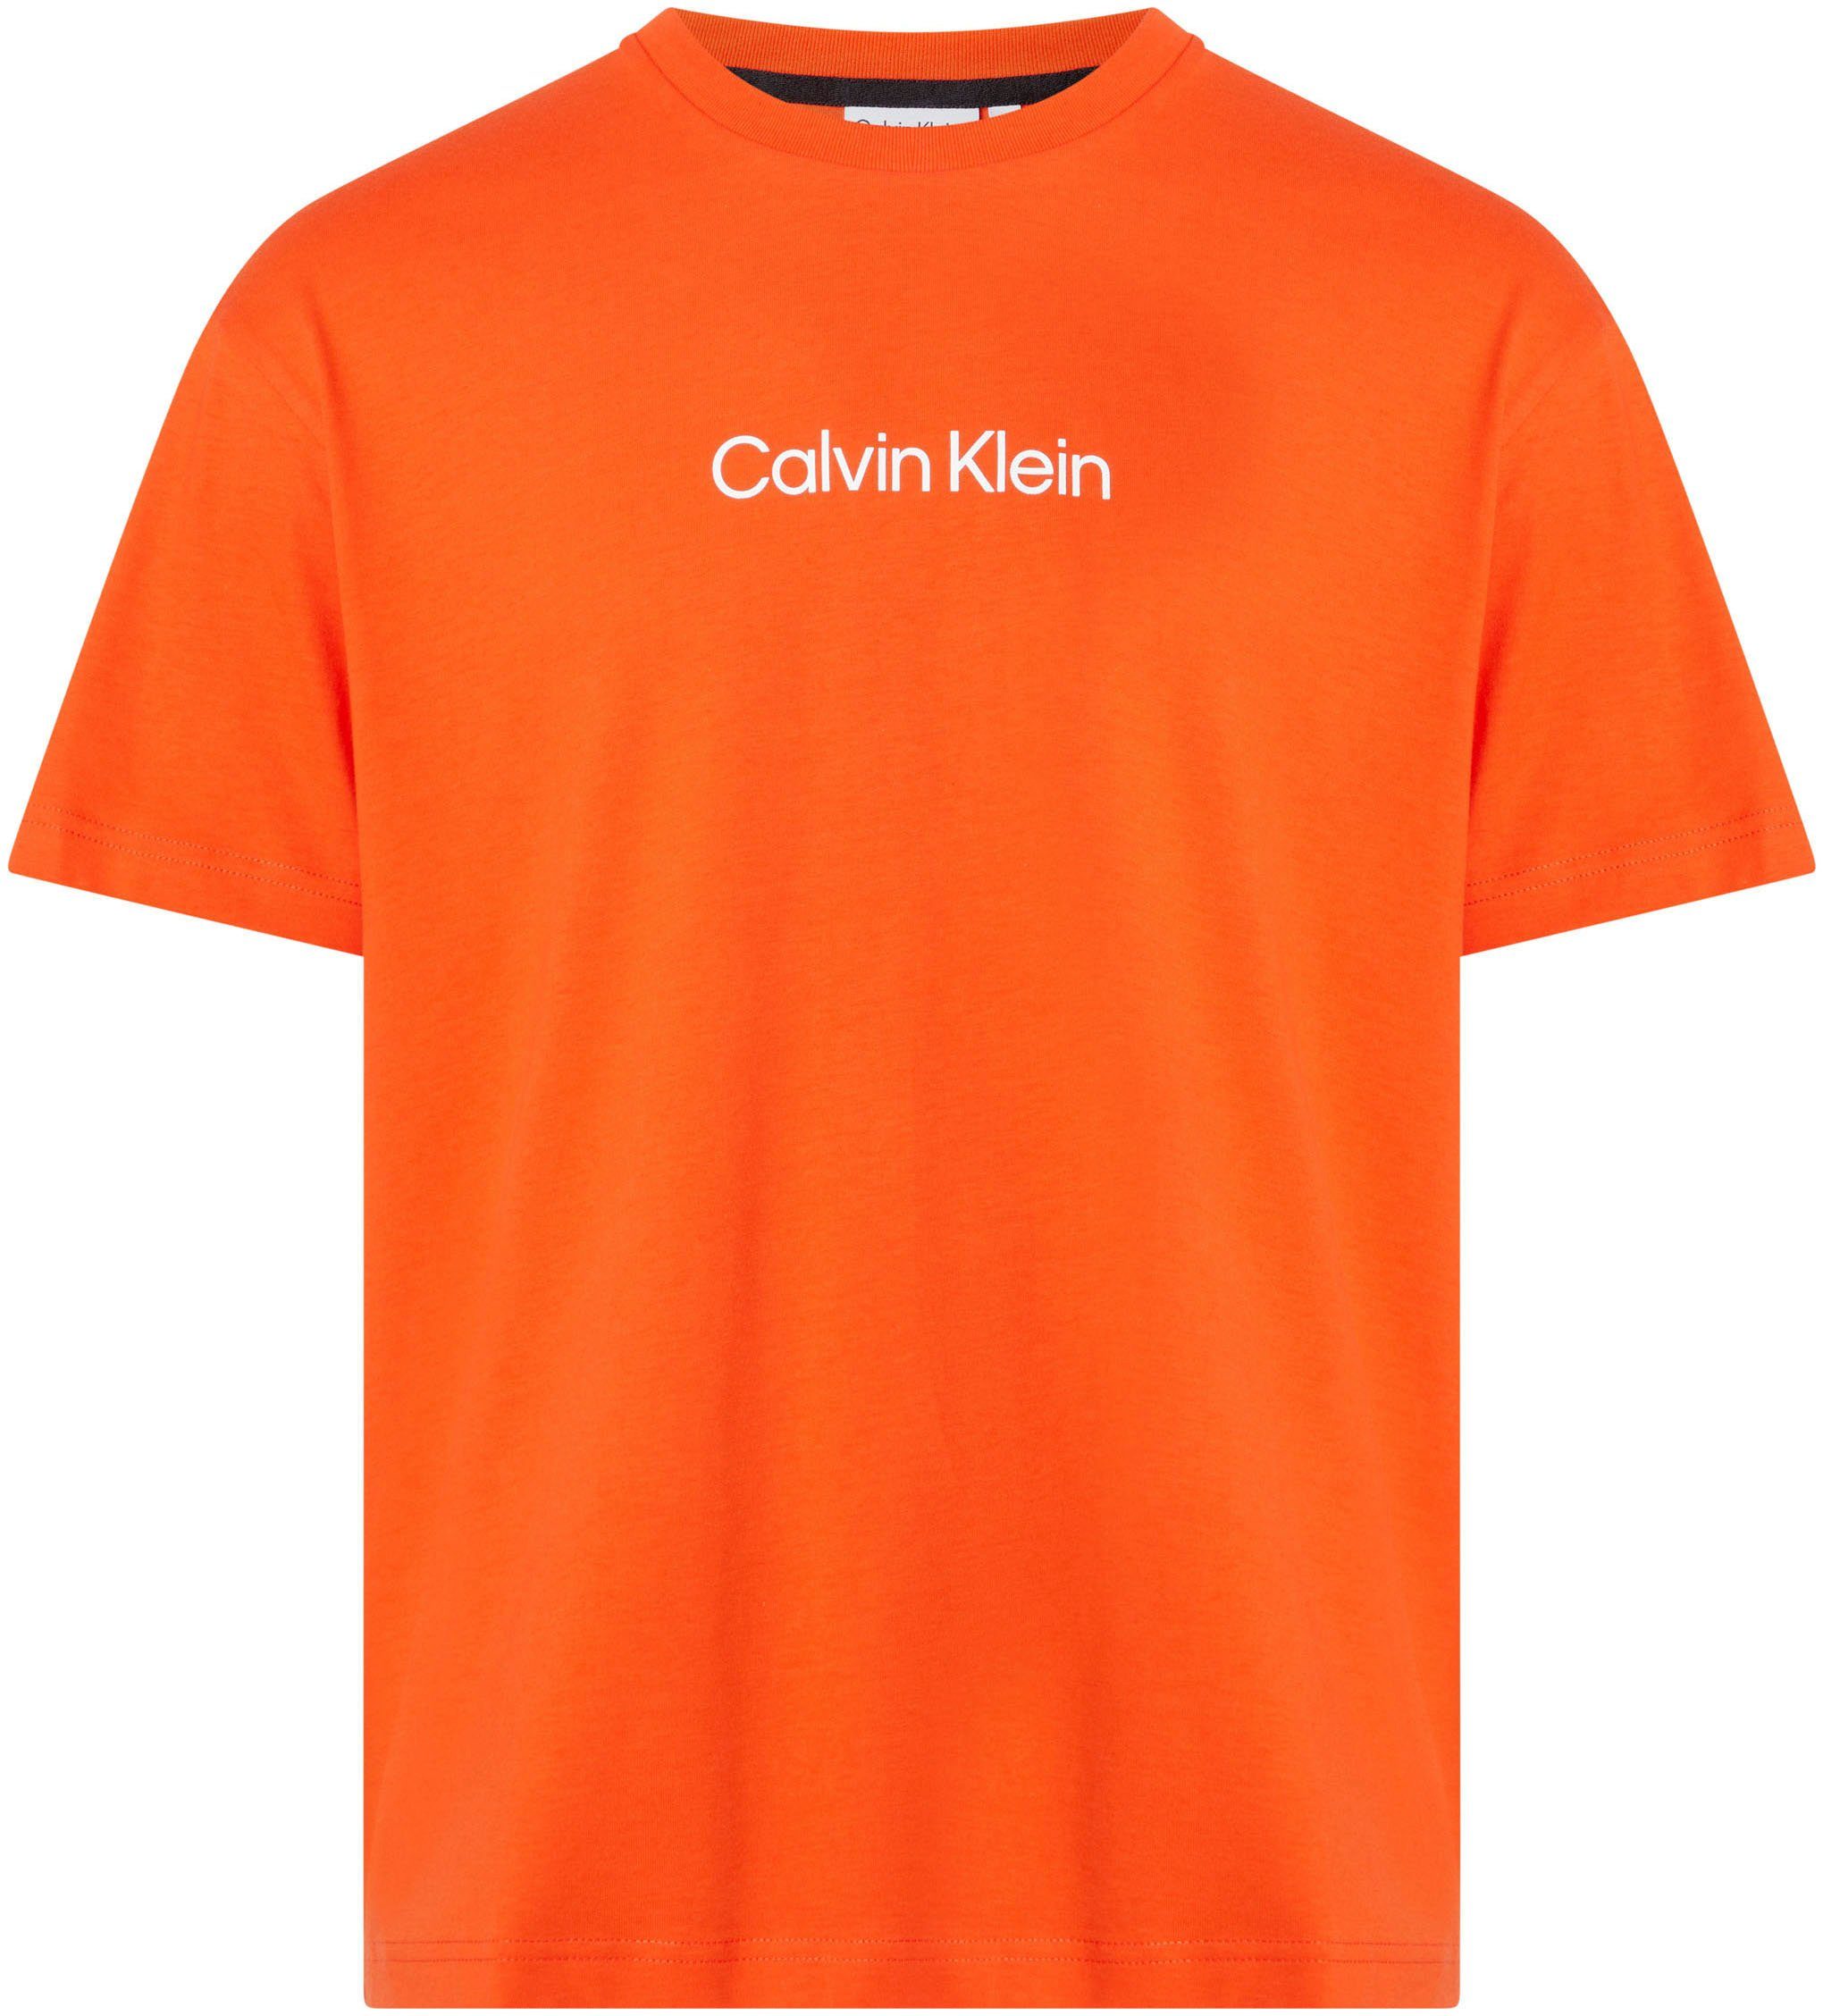 Spicy LOGO Calvin aufgedrucktem COMFORT Orange T-SHIRT Klein Markenlabel T-Shirt mit HERO